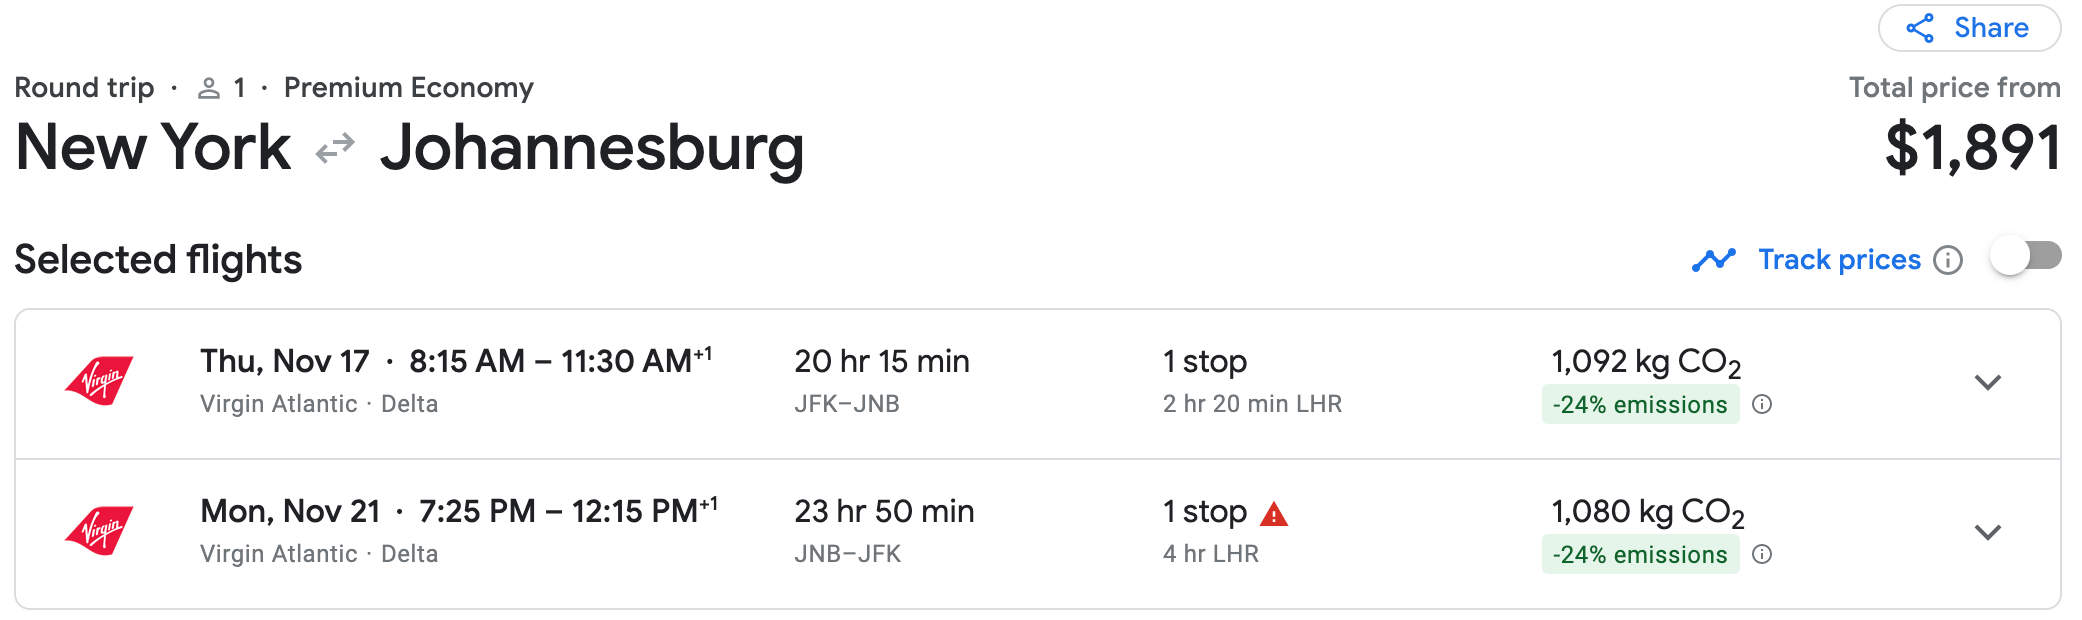 JFK to JNB Virgin Atlantic itinerary in Google Flights